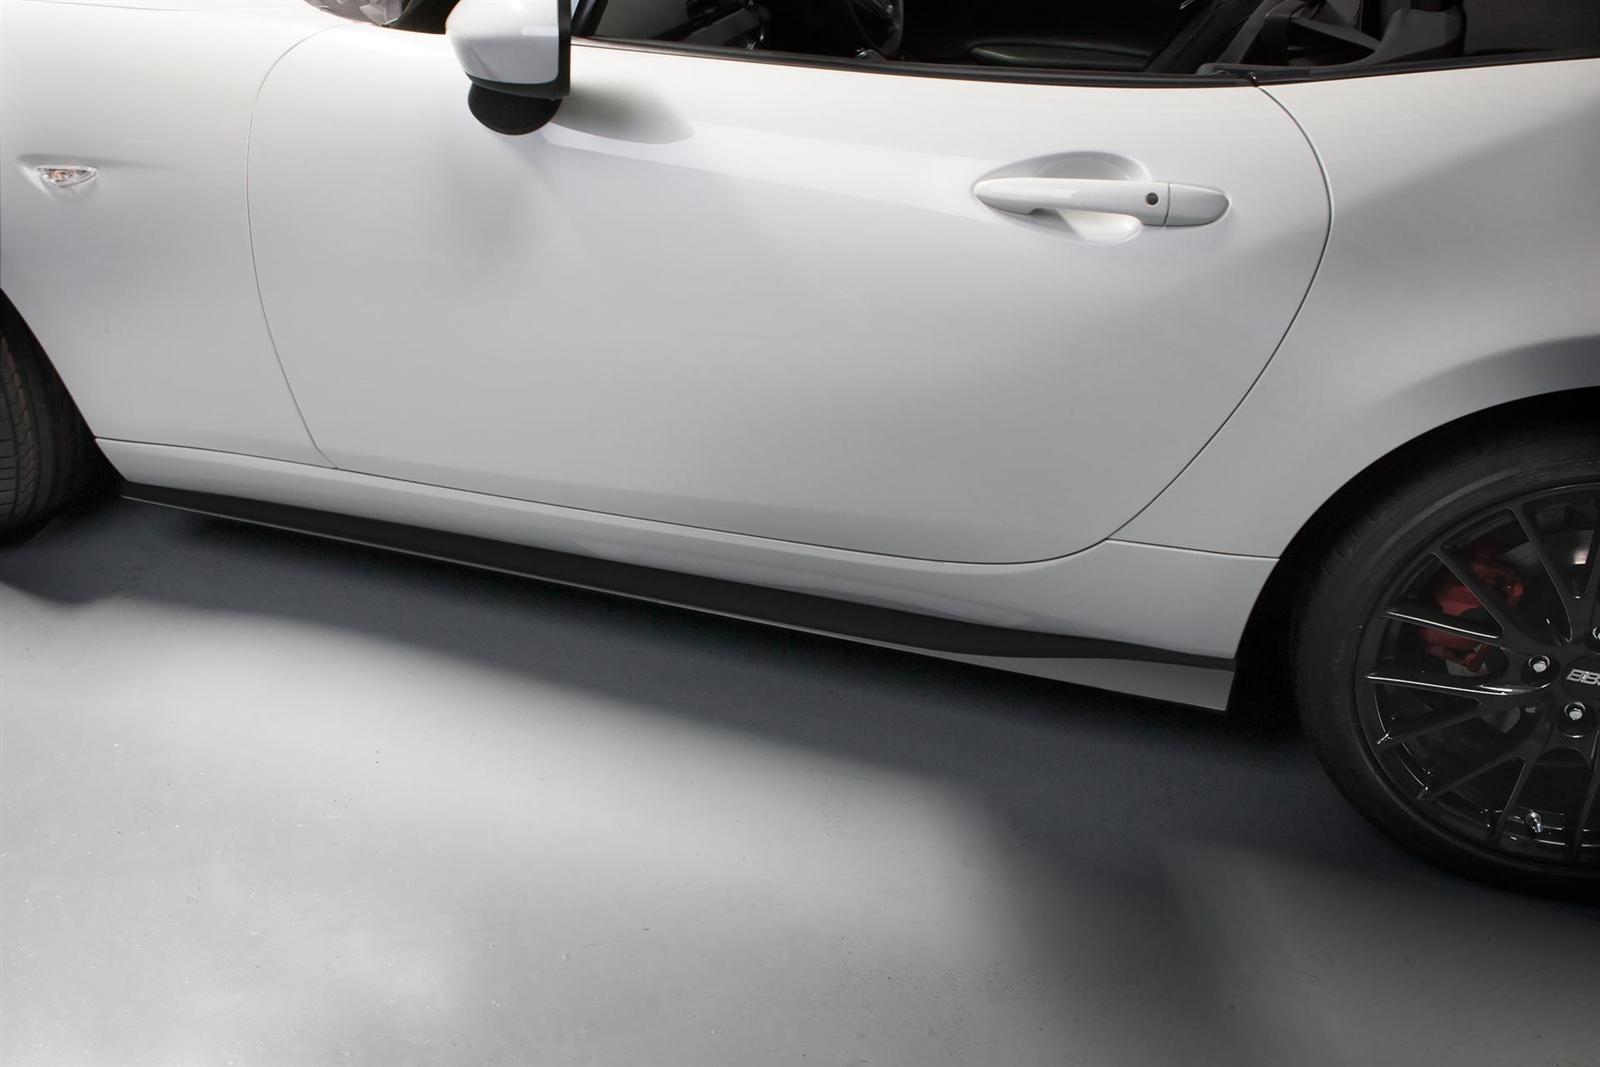 2016 Mazda MX-5 Accessories Design Concept